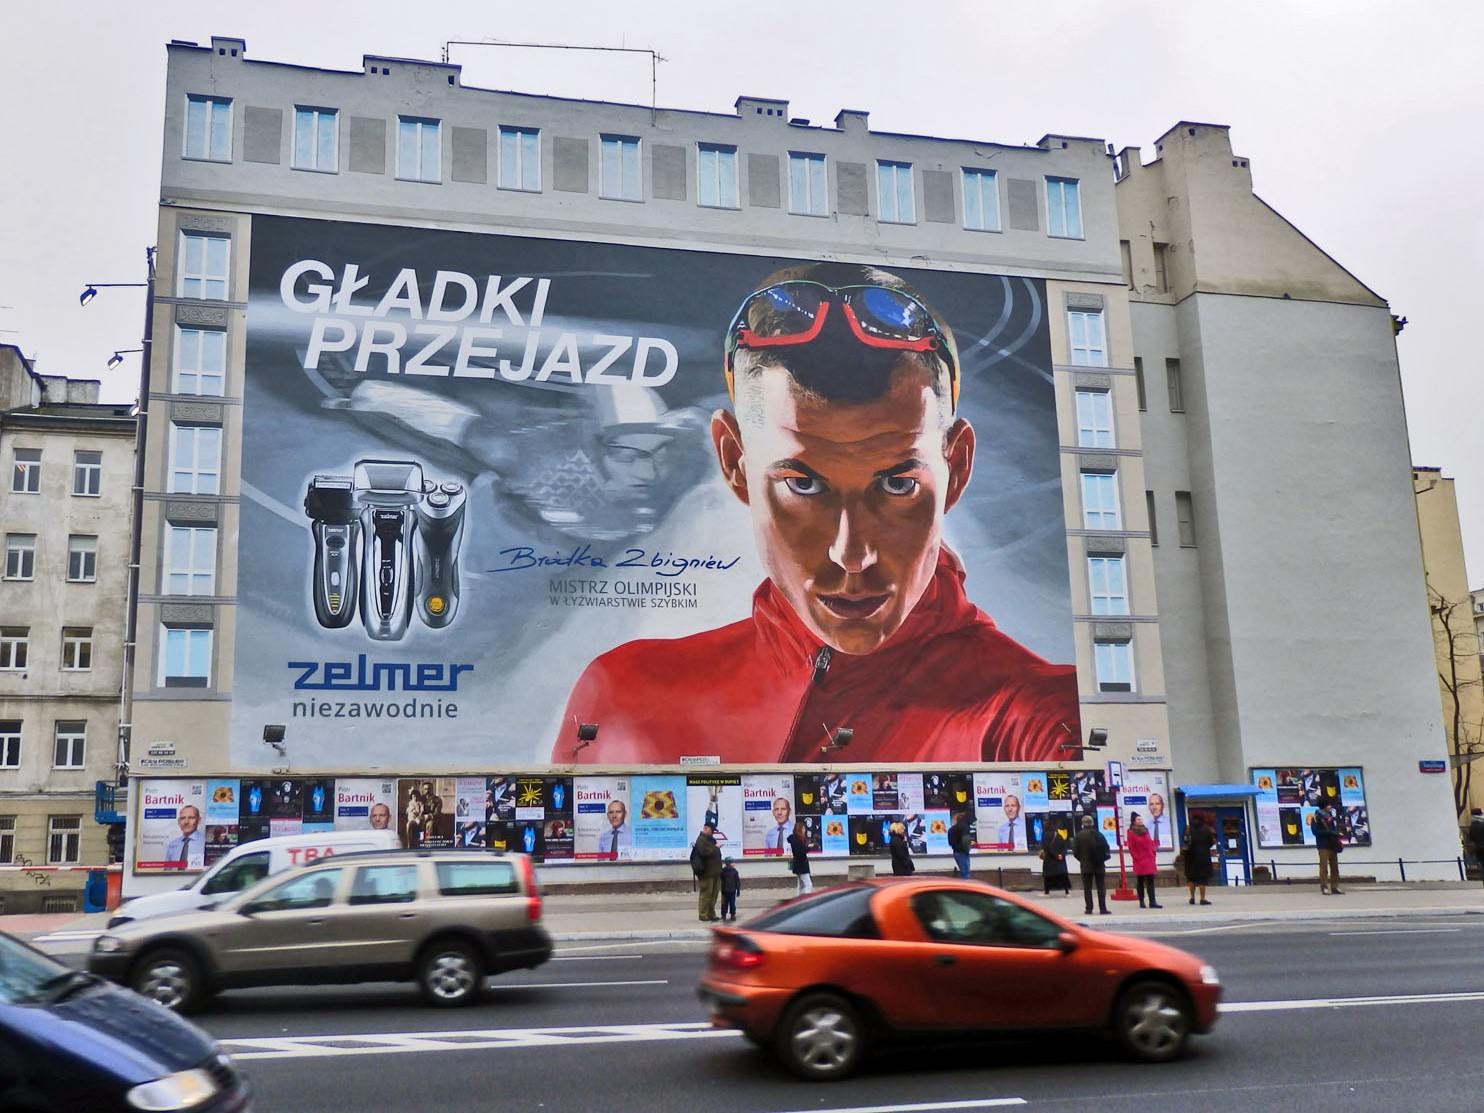 Reklama muralowa Zelmer Gładki Przejazd Zbigniew Bródka w Warszawie Polna Metro Centrum | Zbigniew Bródka Gładki przejazd mural dla Zelmer | Portfolio